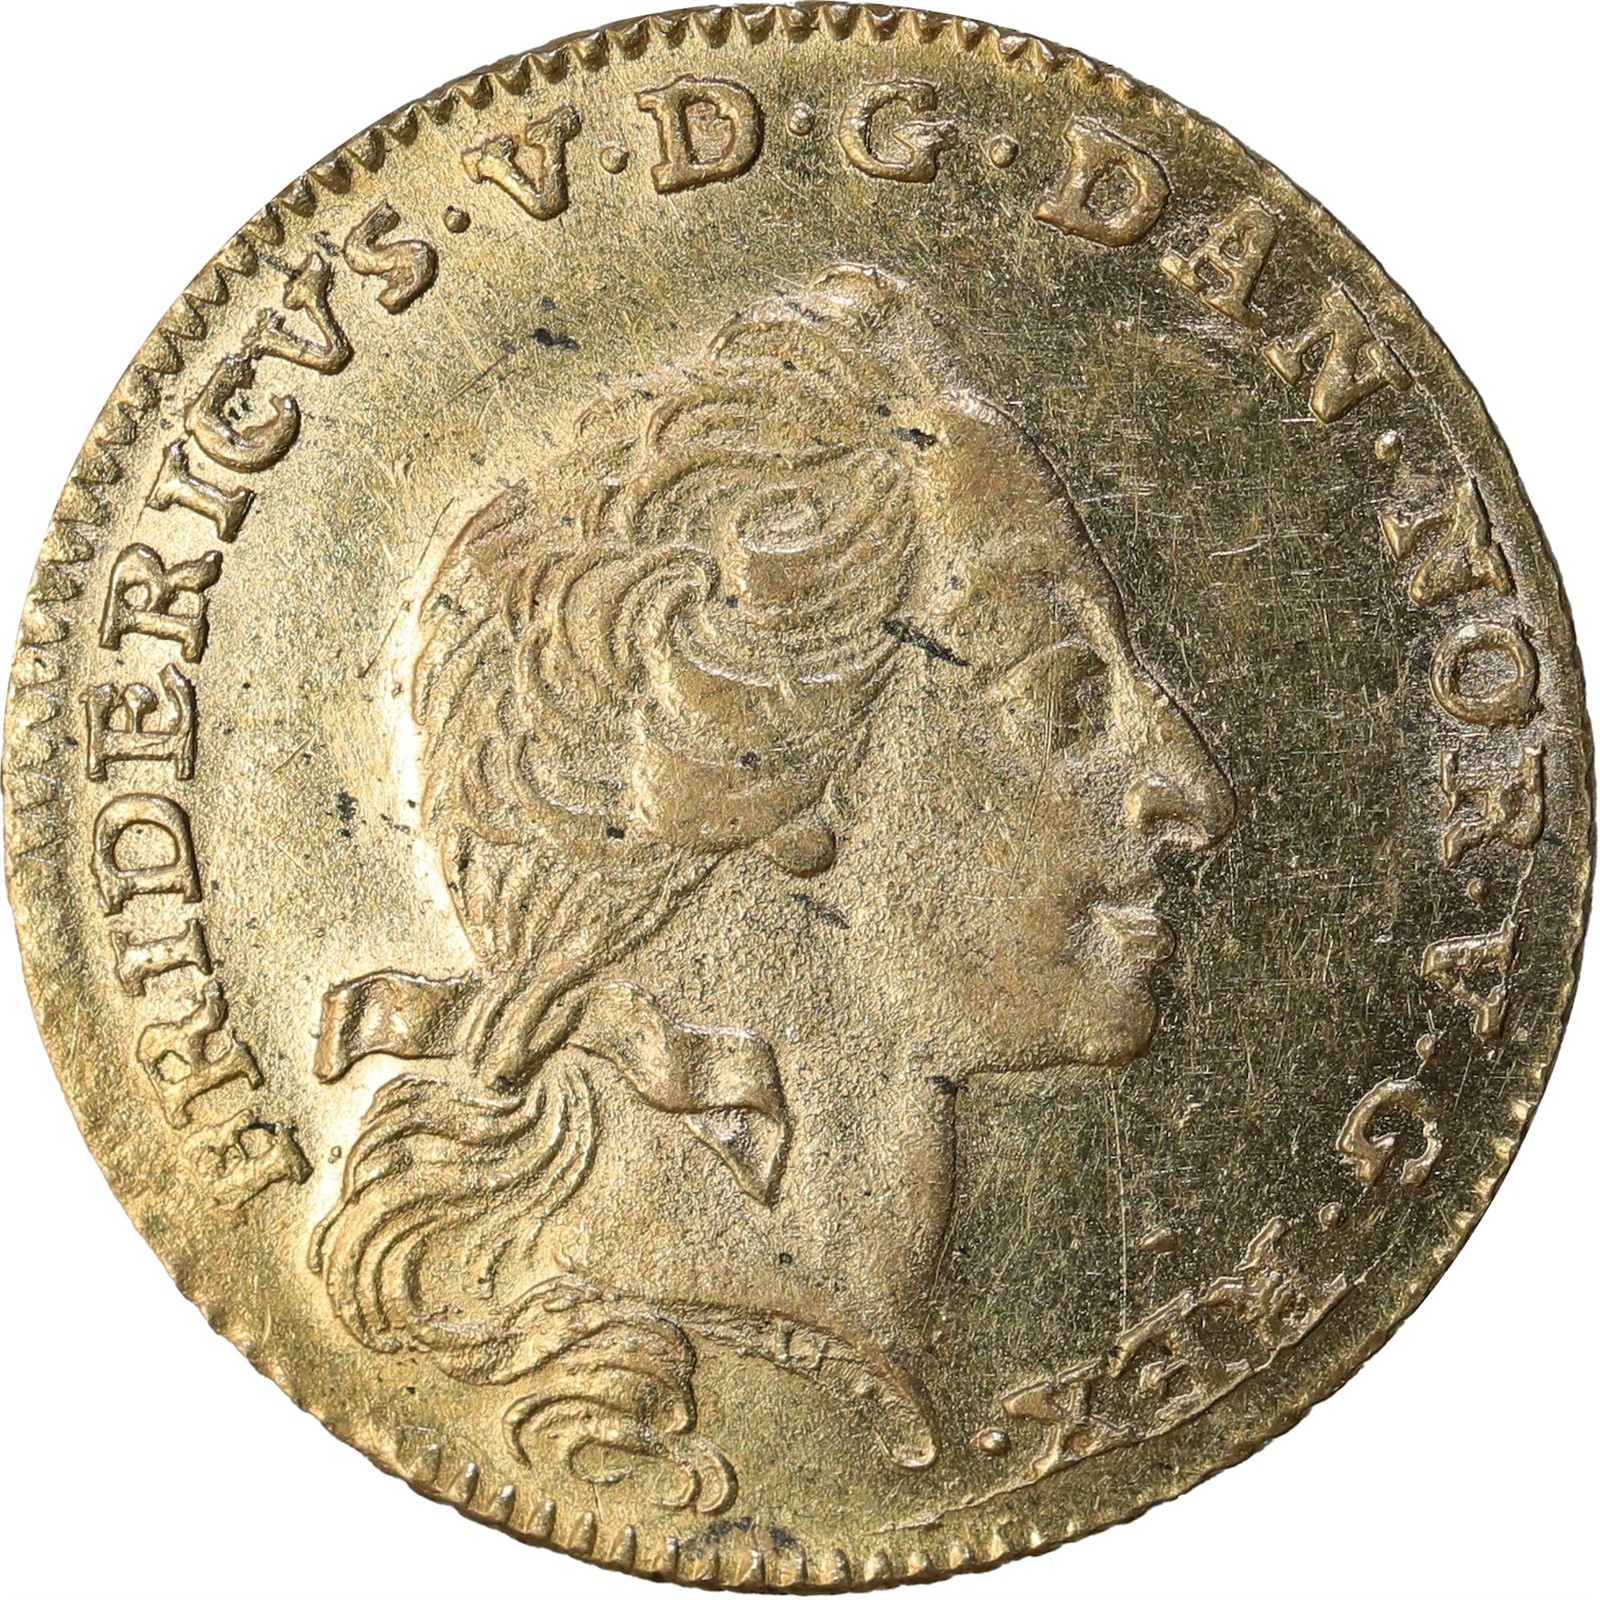 DENMARK. Frederik V. 12 Mark (Courant Ducat) 1761-W. Kv 0/01 (UNC).